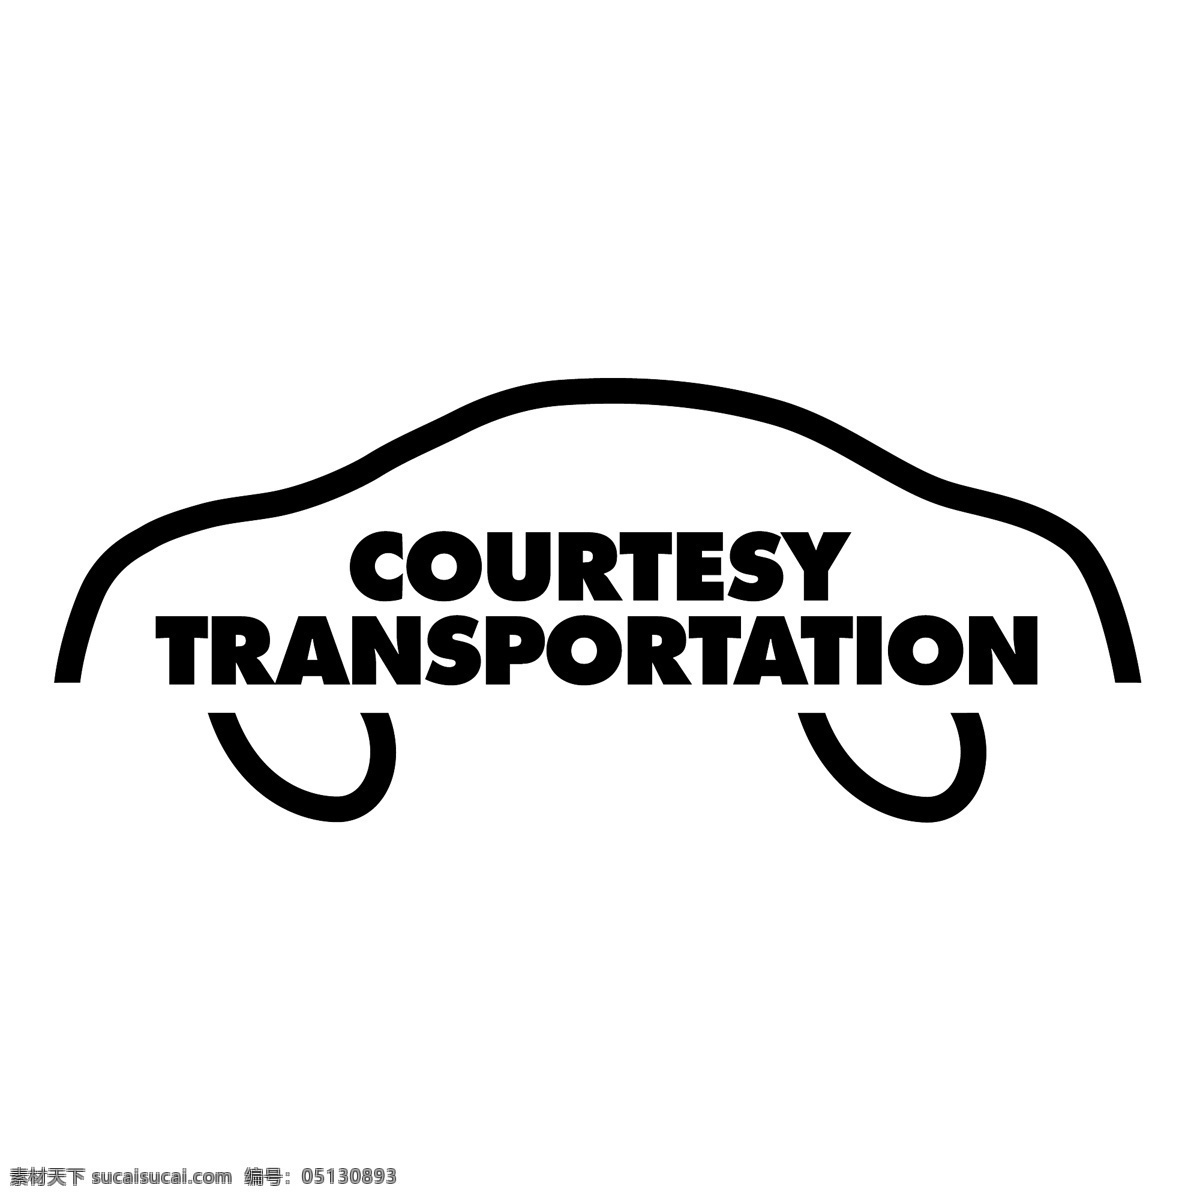 礼貌 运输 免费交通标志 交通标志 提供 psd源文件 logo设计